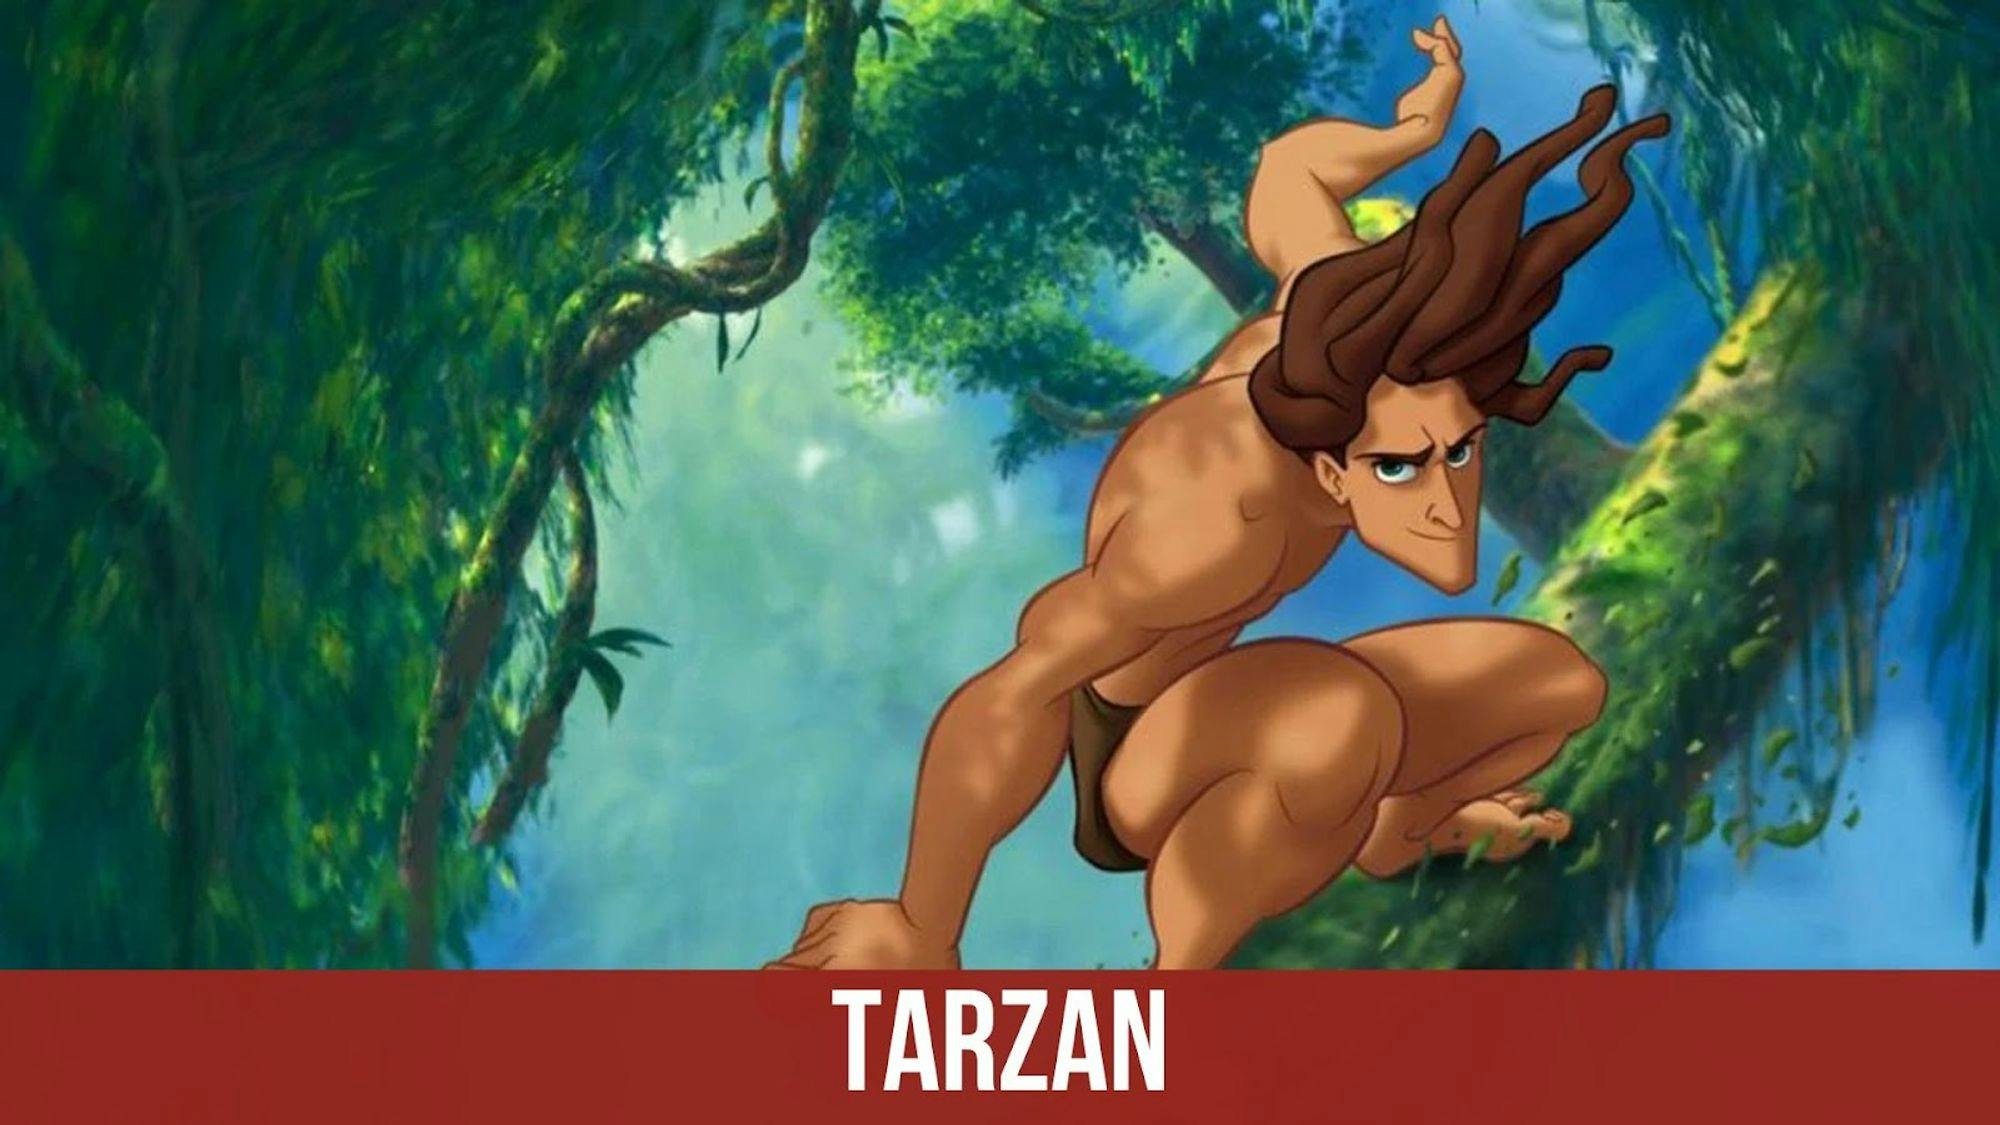 poster du film Tarzan avec un titre sur fond grenat